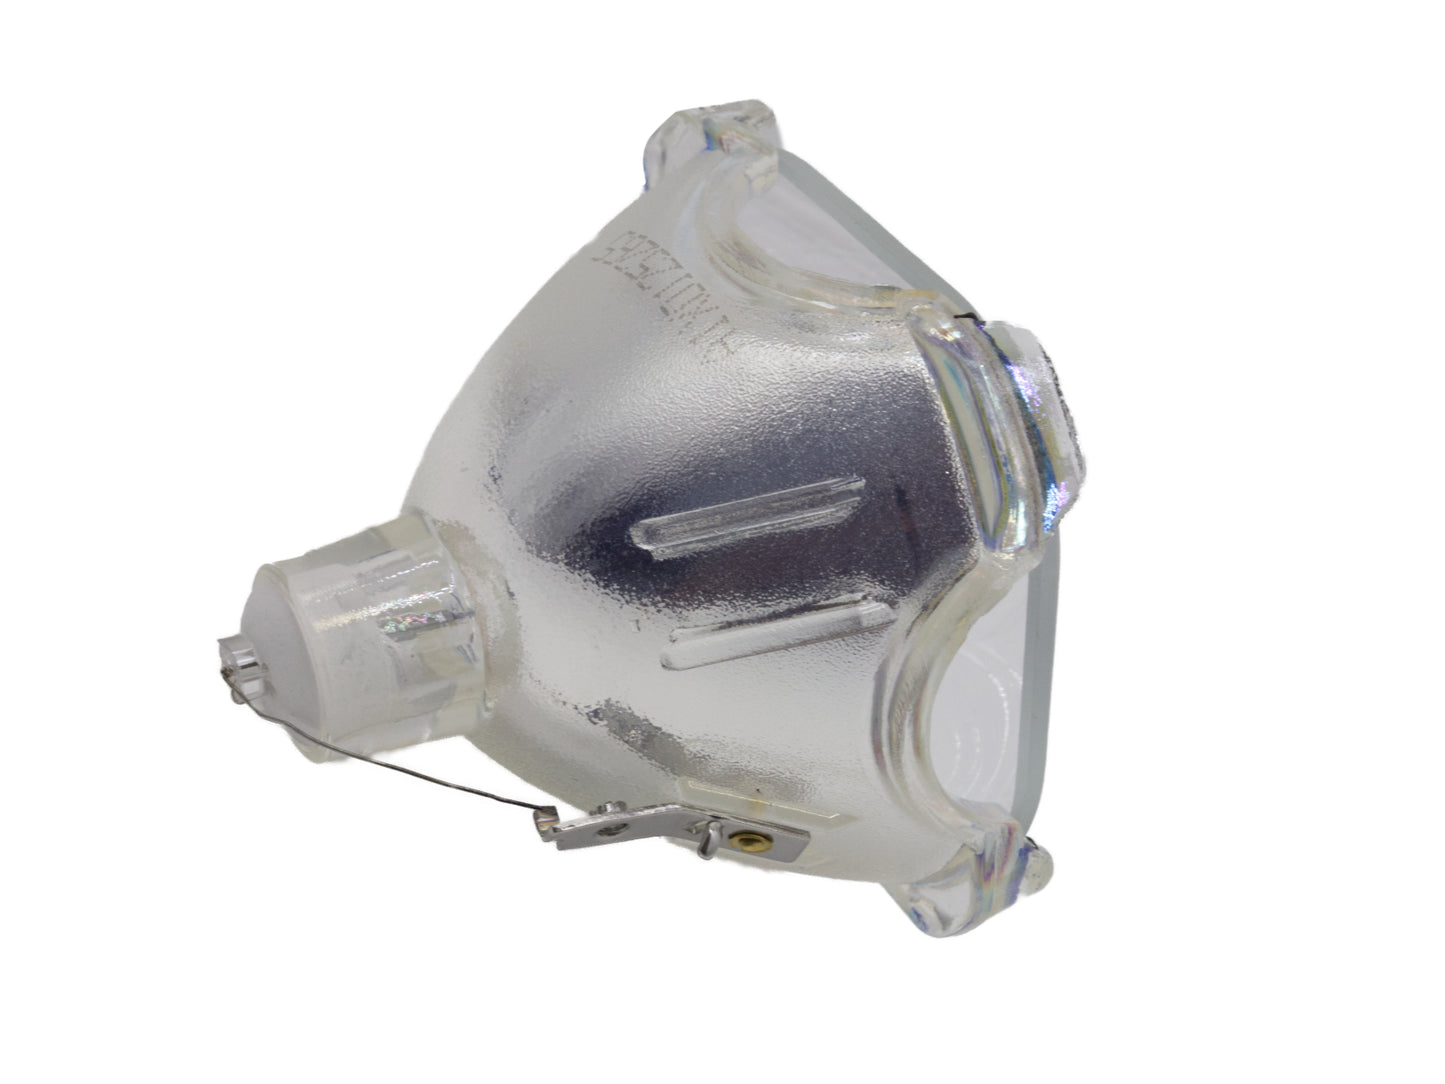 azurano Beamerlampe für SONY LMP-H210 Ersatzlampe Projektorlampe - Bild 4